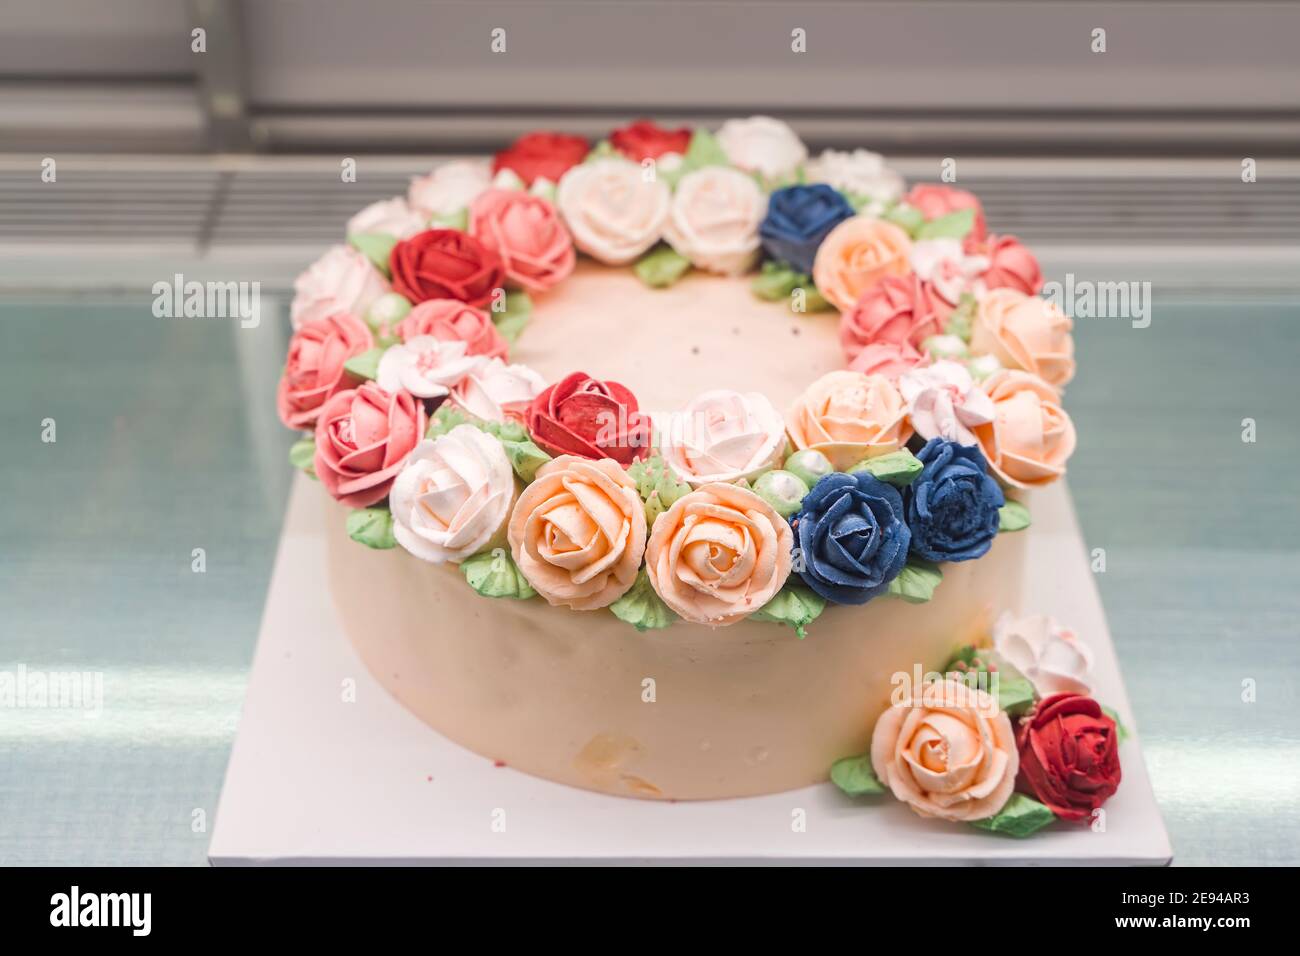 Schöne hausgemachte Kuchen in Form eines Einhorns mit Cremefarbene Blumen auf dem Tisch Stockfoto